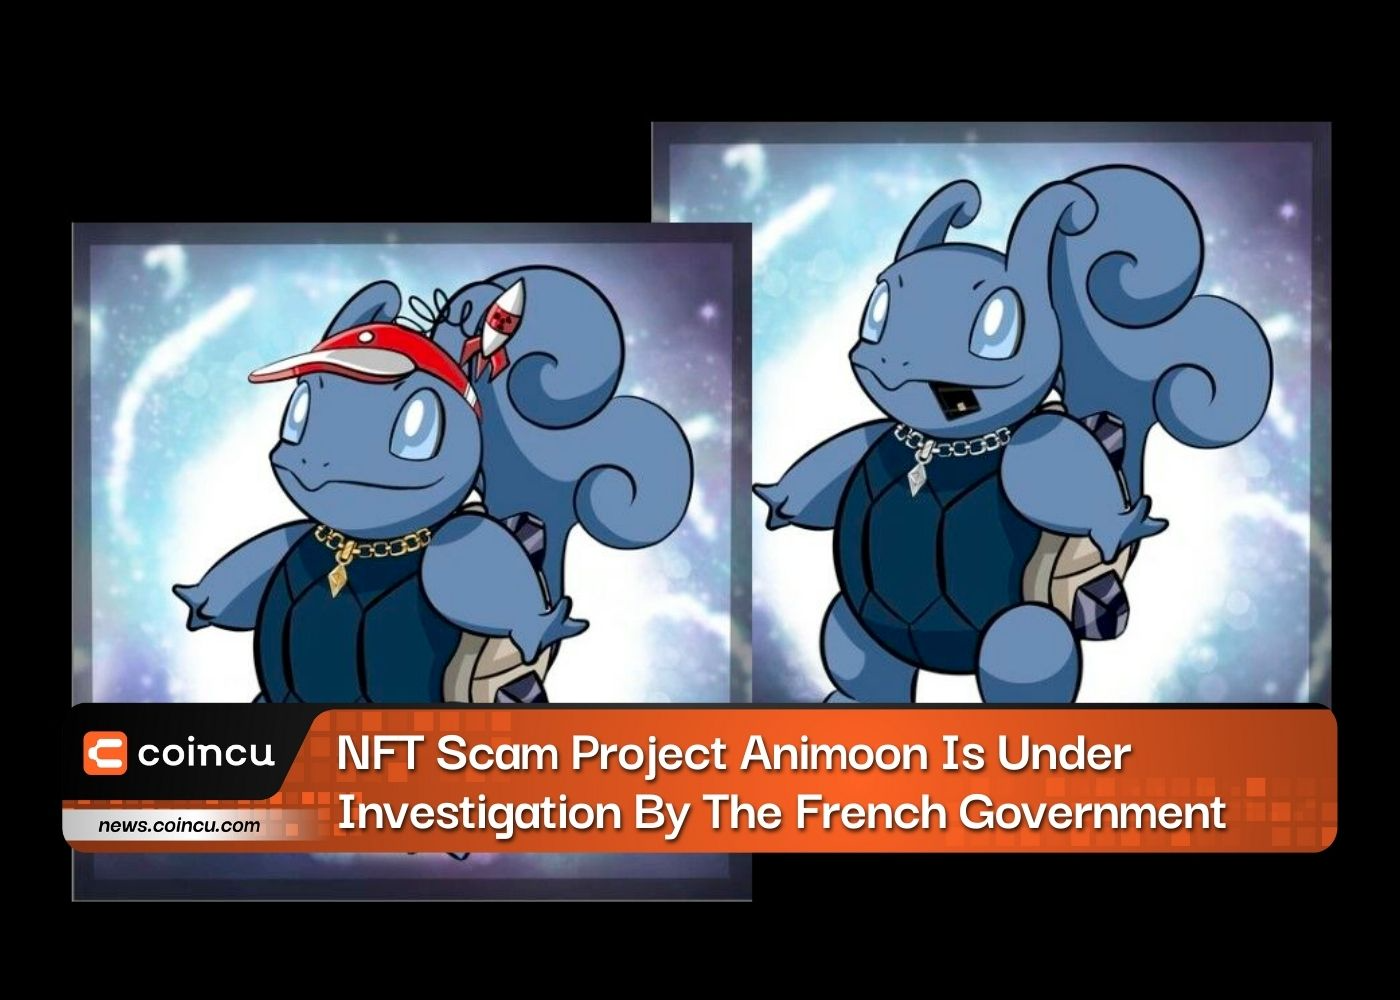 NFT Dolandırıcılığı Projesi Animoon, Fransız Hükümeti Tarafından Soruşturma Altında